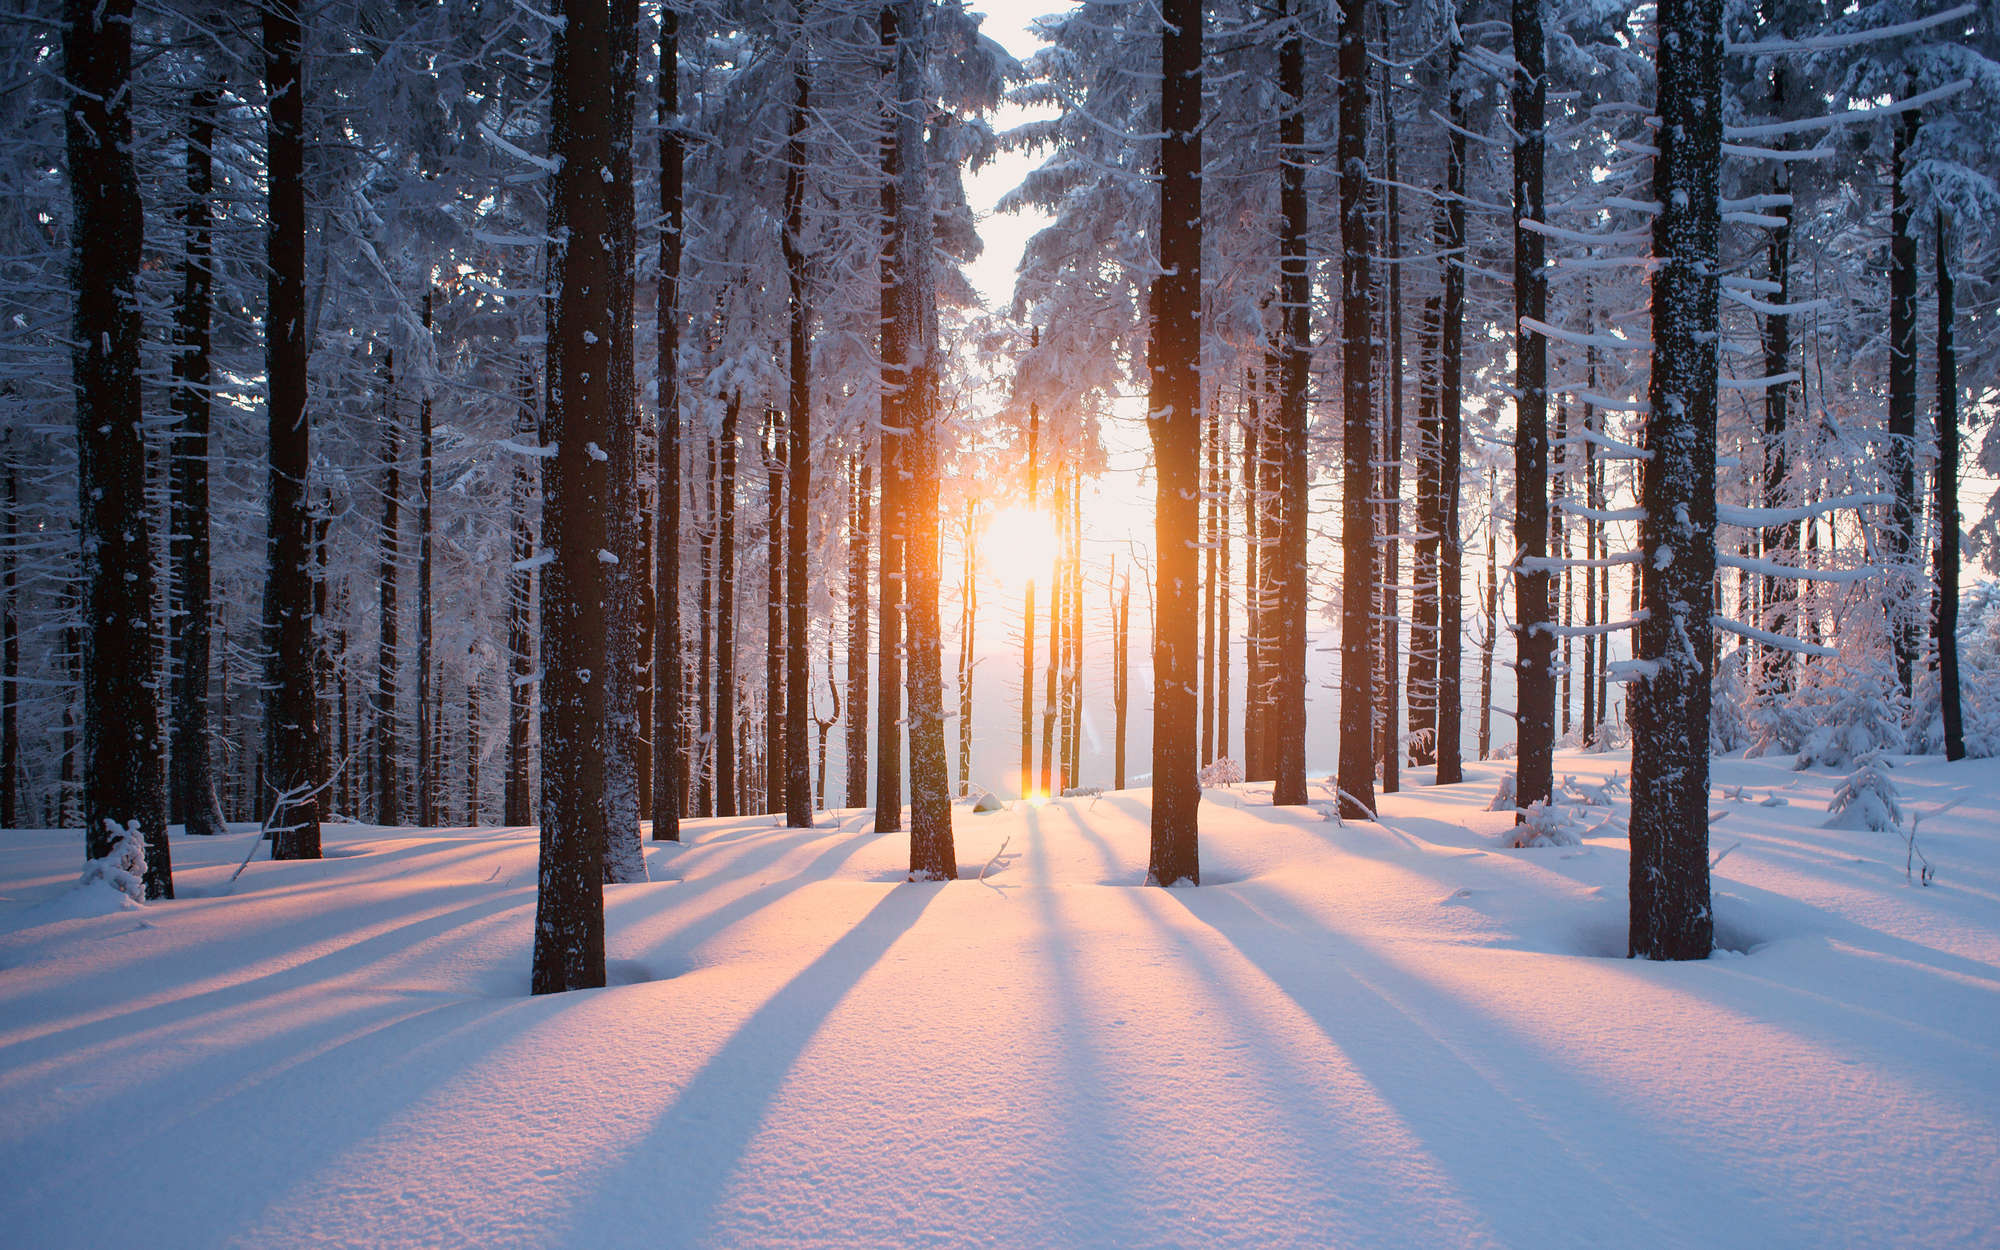             Fotomurali Neve nella foresta invernale - Materiali non tessuto testurizzato
        